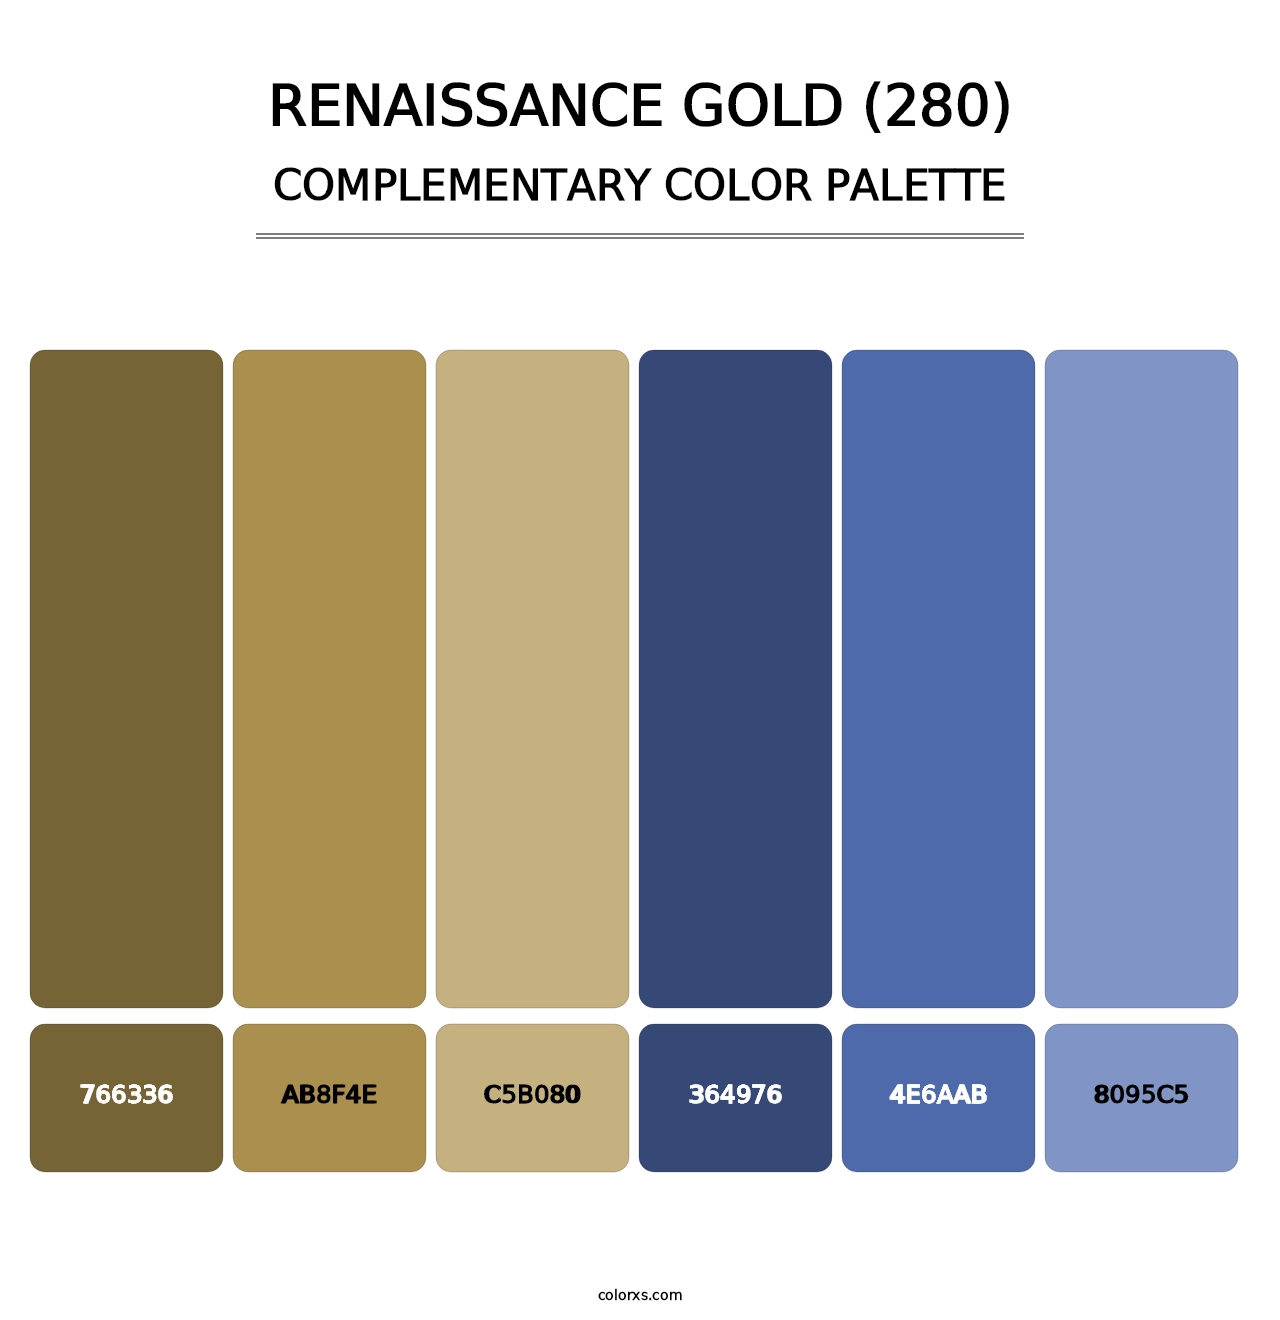 Renaissance Gold (280) - Complementary Color Palette